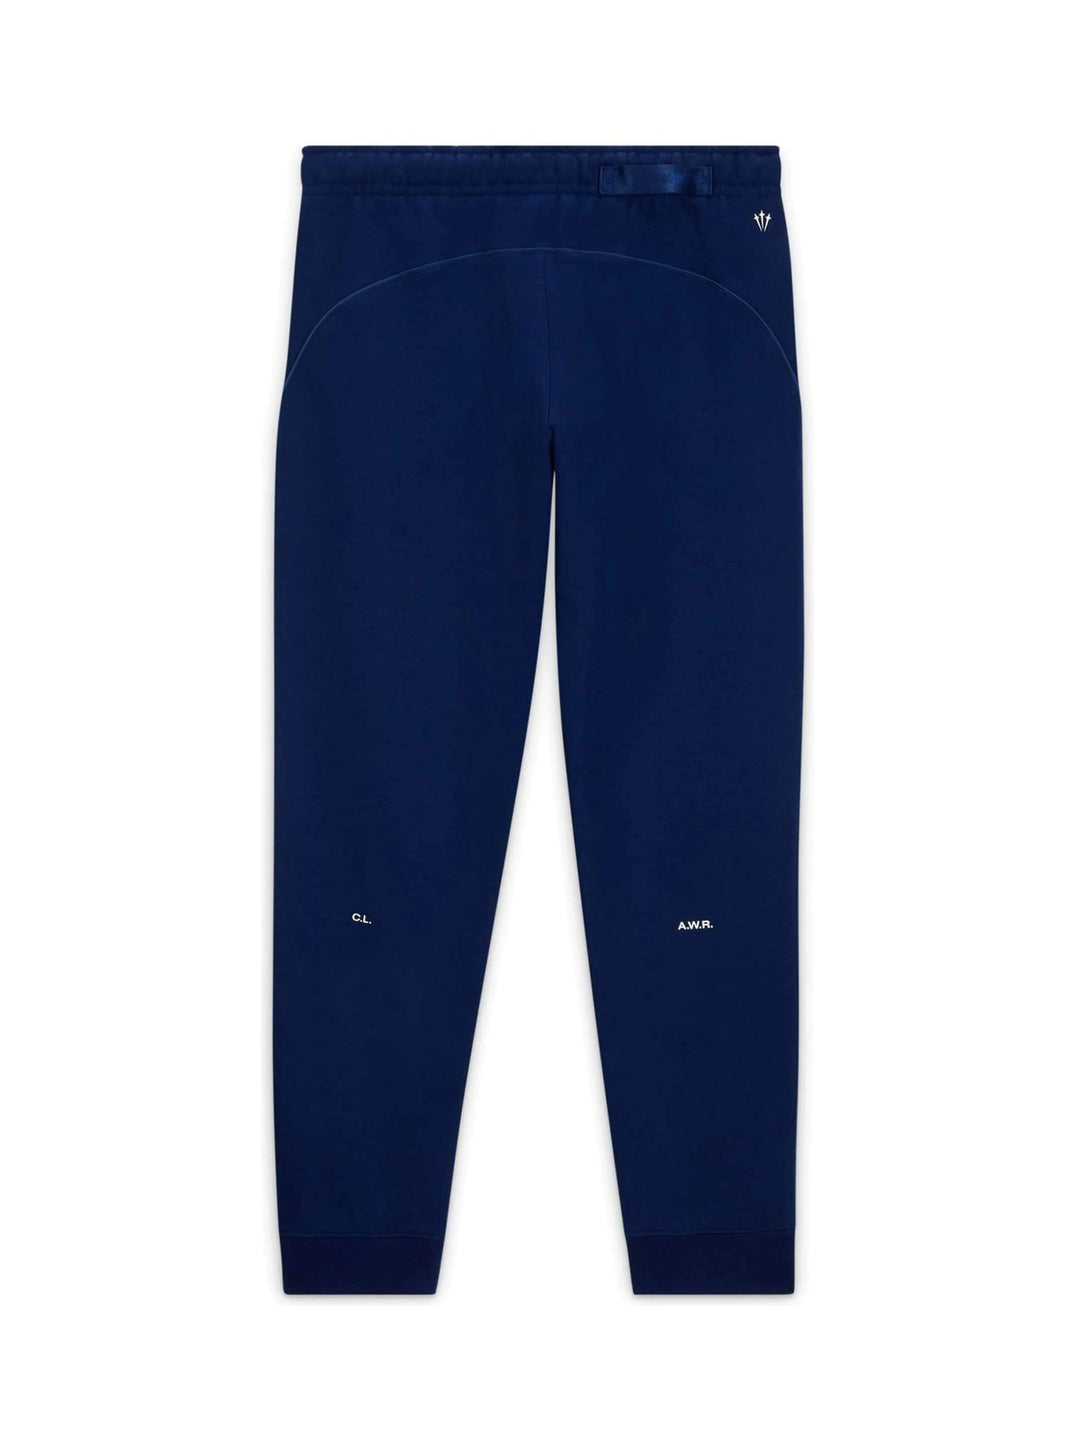 Nike x Drake NOCTA Cardinal Stock Fleece Pants Navy Prior